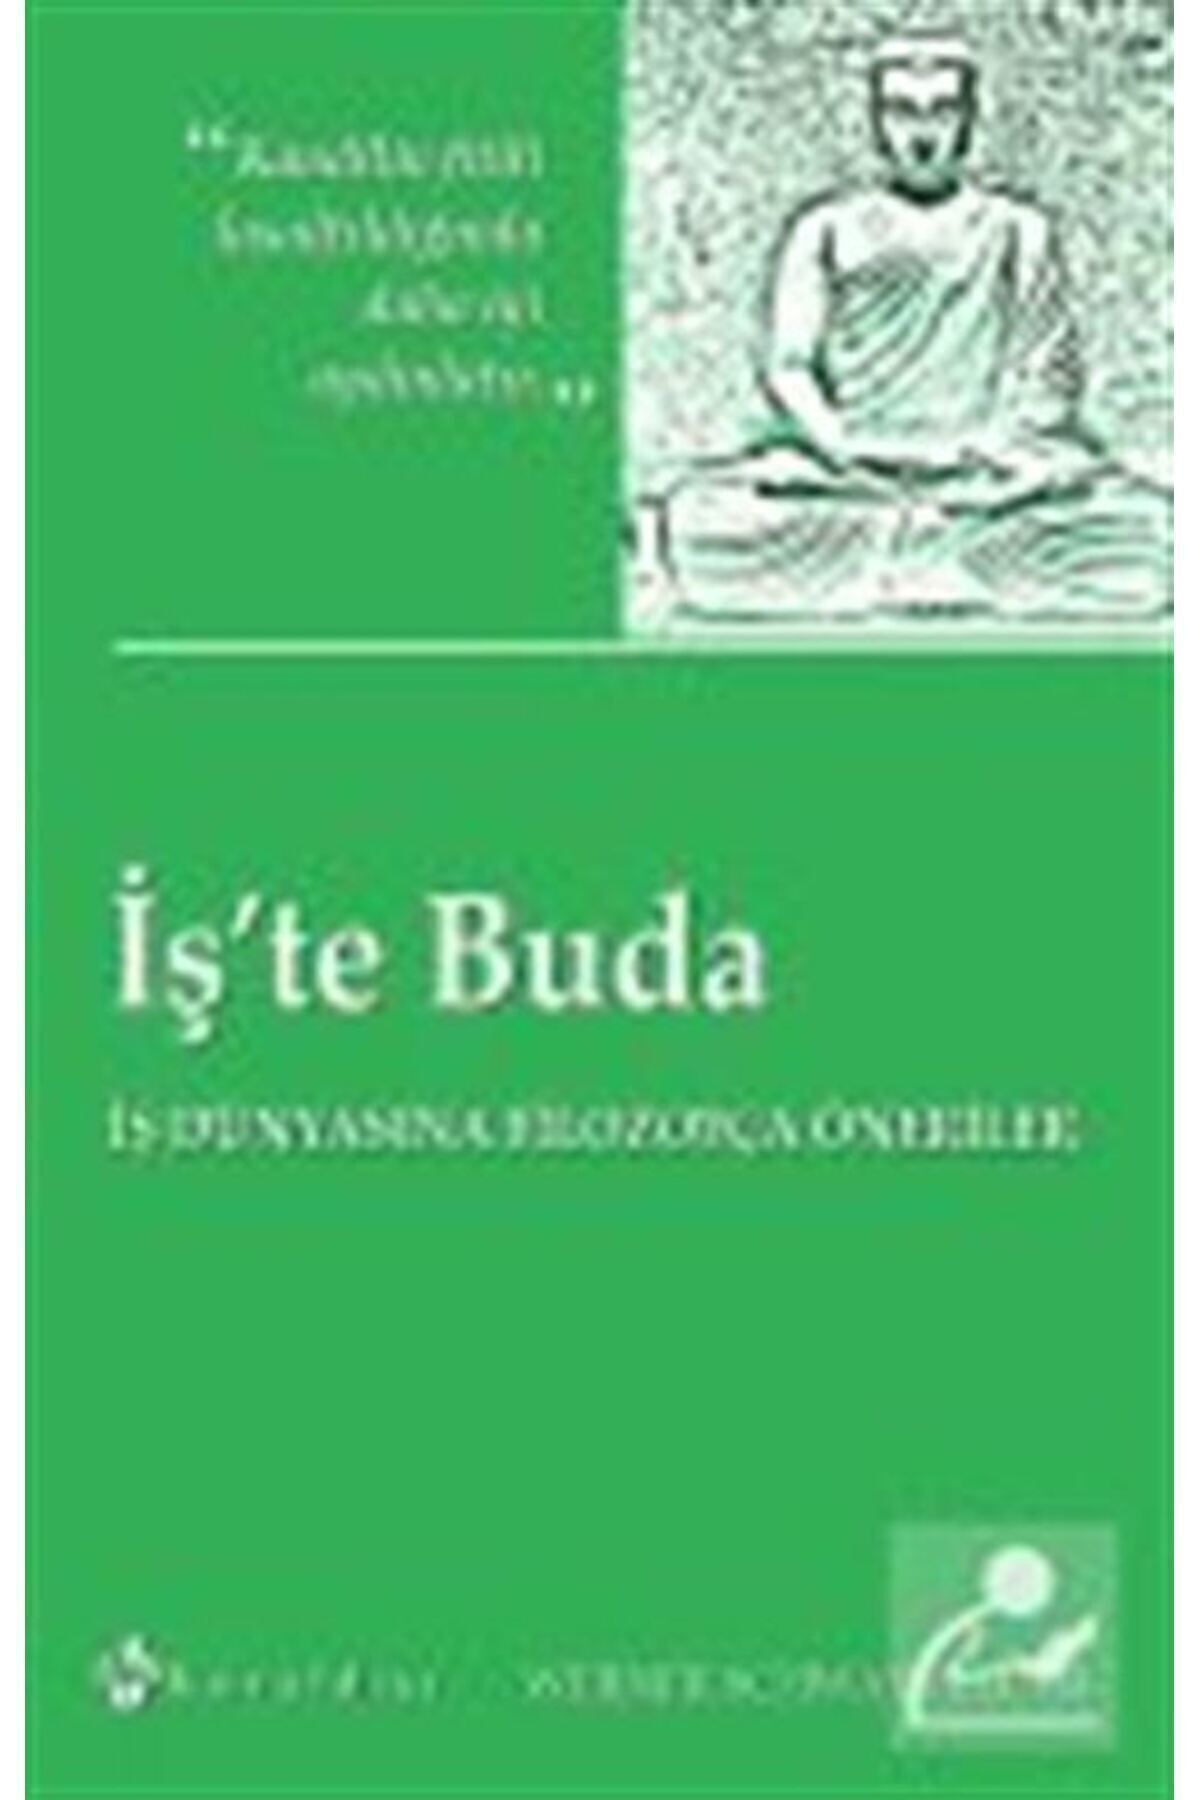 Kuraldışı Yayınları İş'te Buda & Iş Dünyasına Filozofça Öneriler